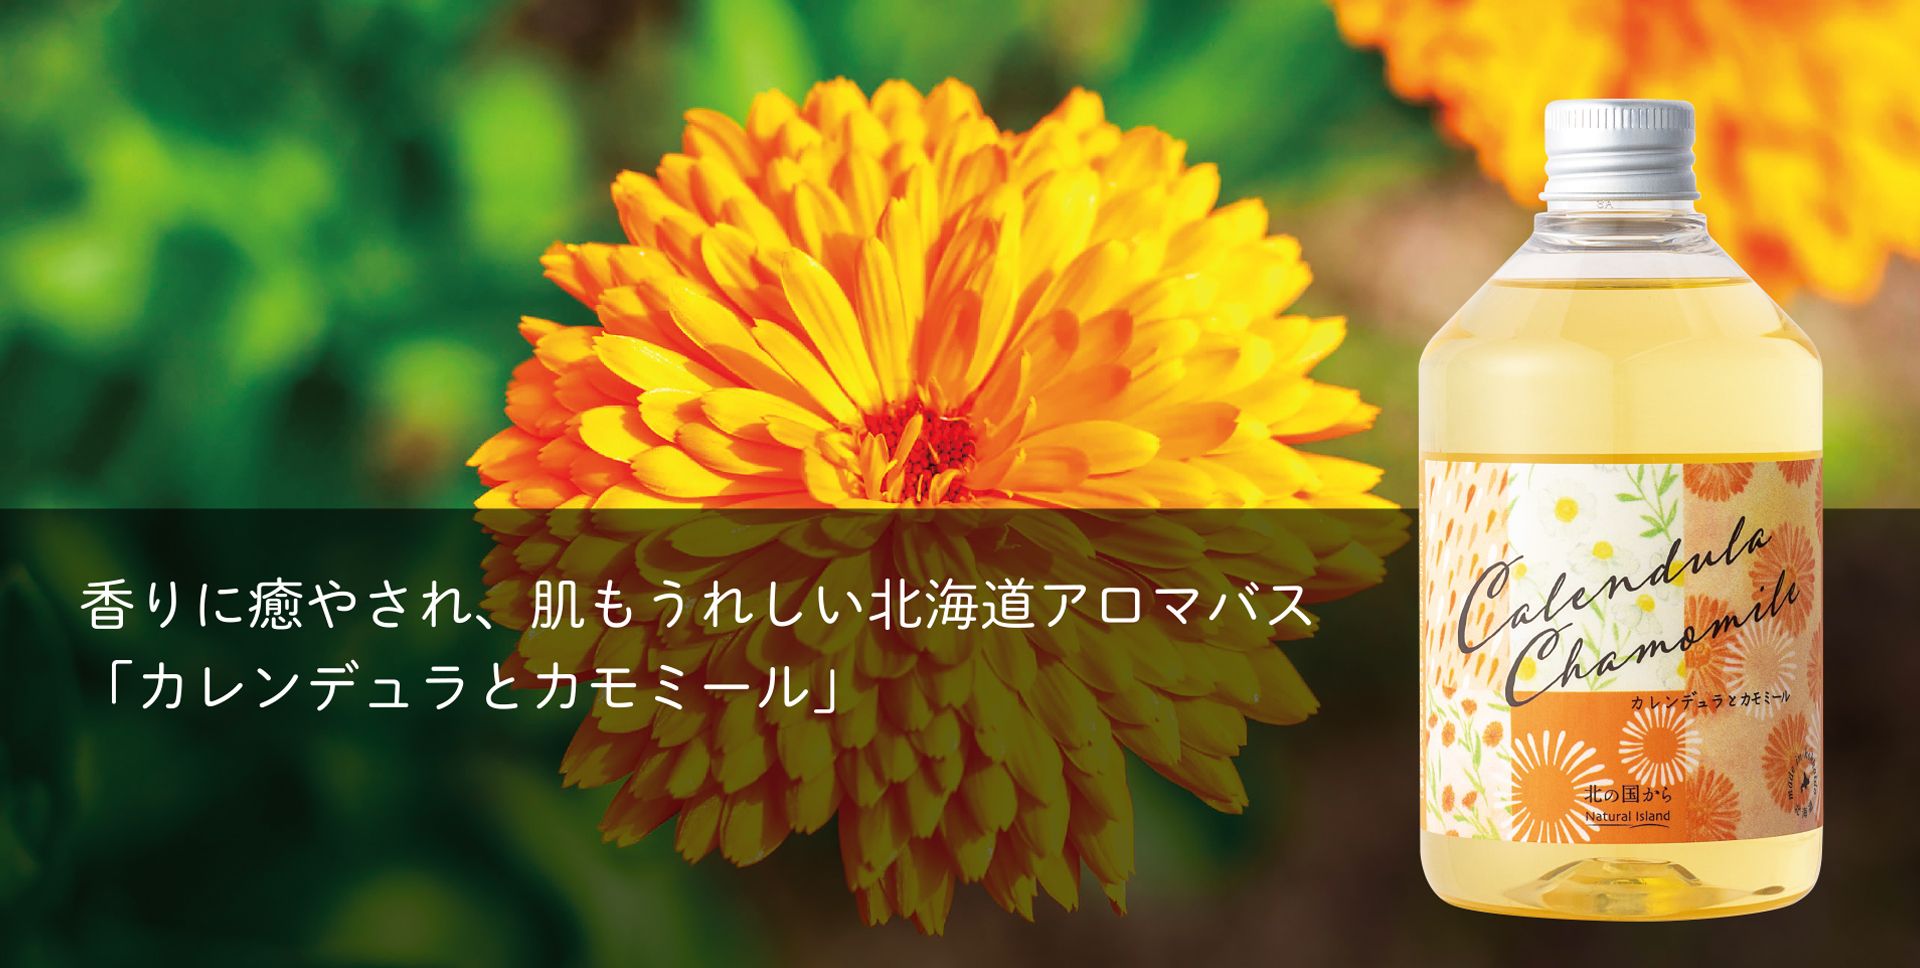 香りに癒され、肌もうれしい北海道アロマバス「カレンデュラとカモミール」